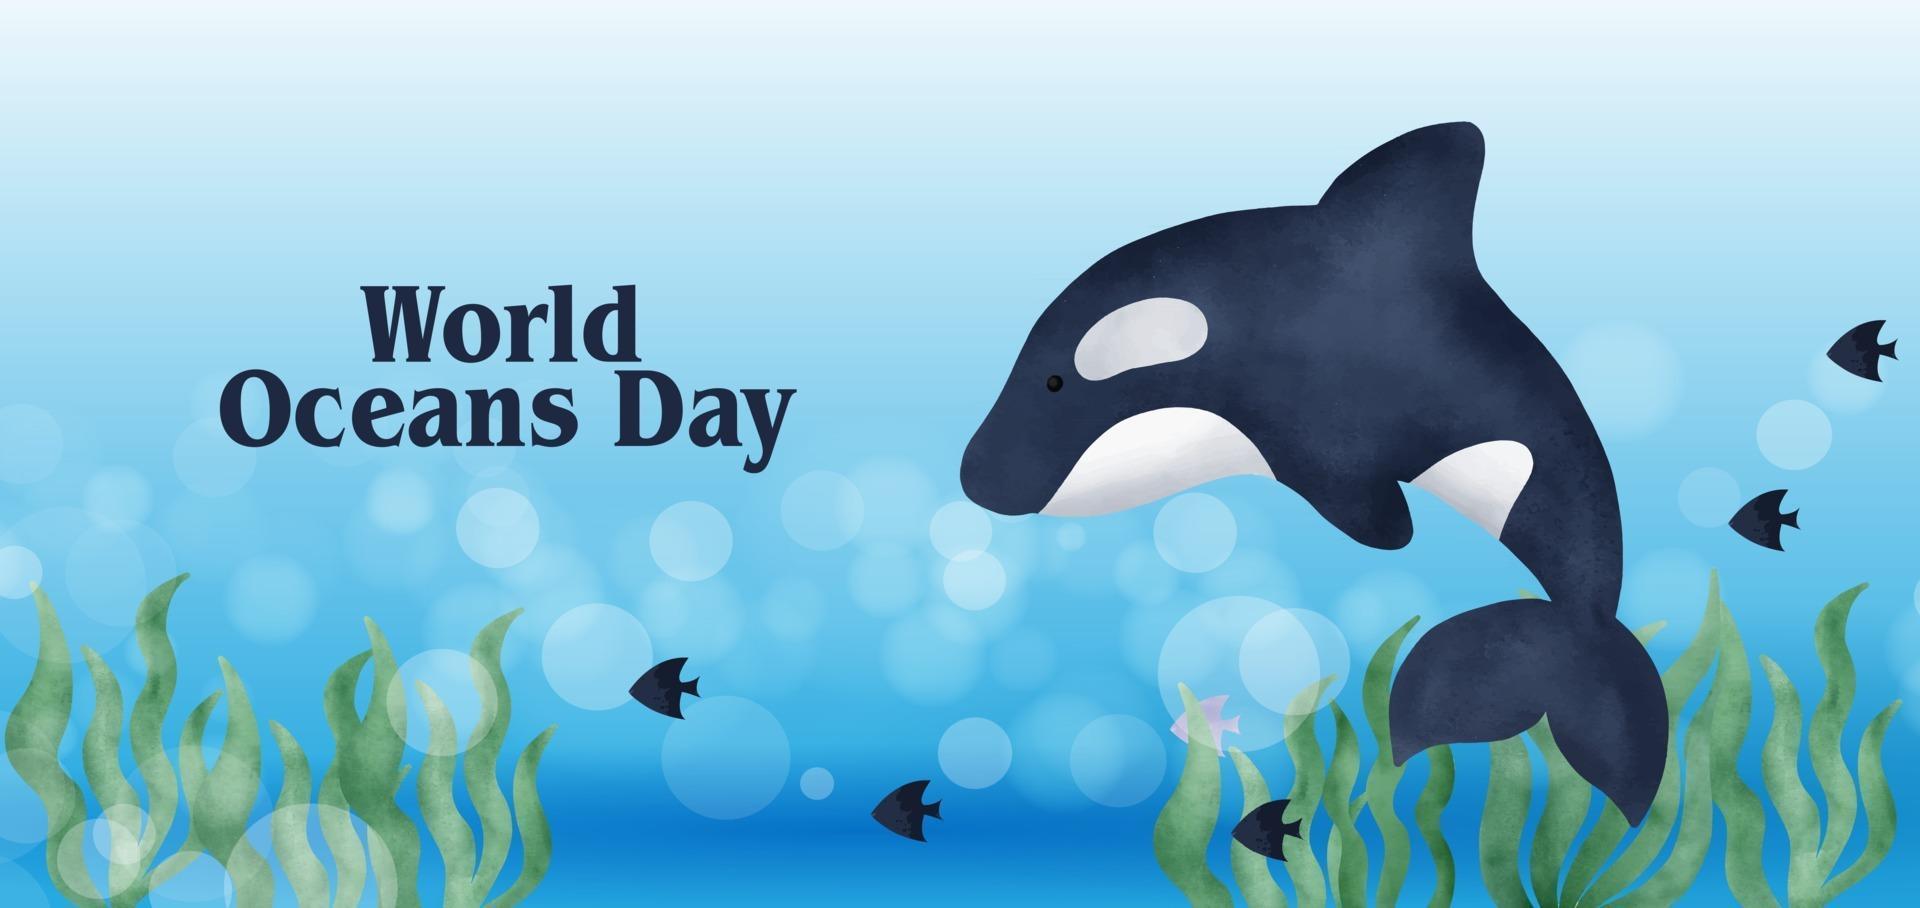 bannière de la journée mondiale des océans avec un dauphin mignon dans un style aquarelle vecteur